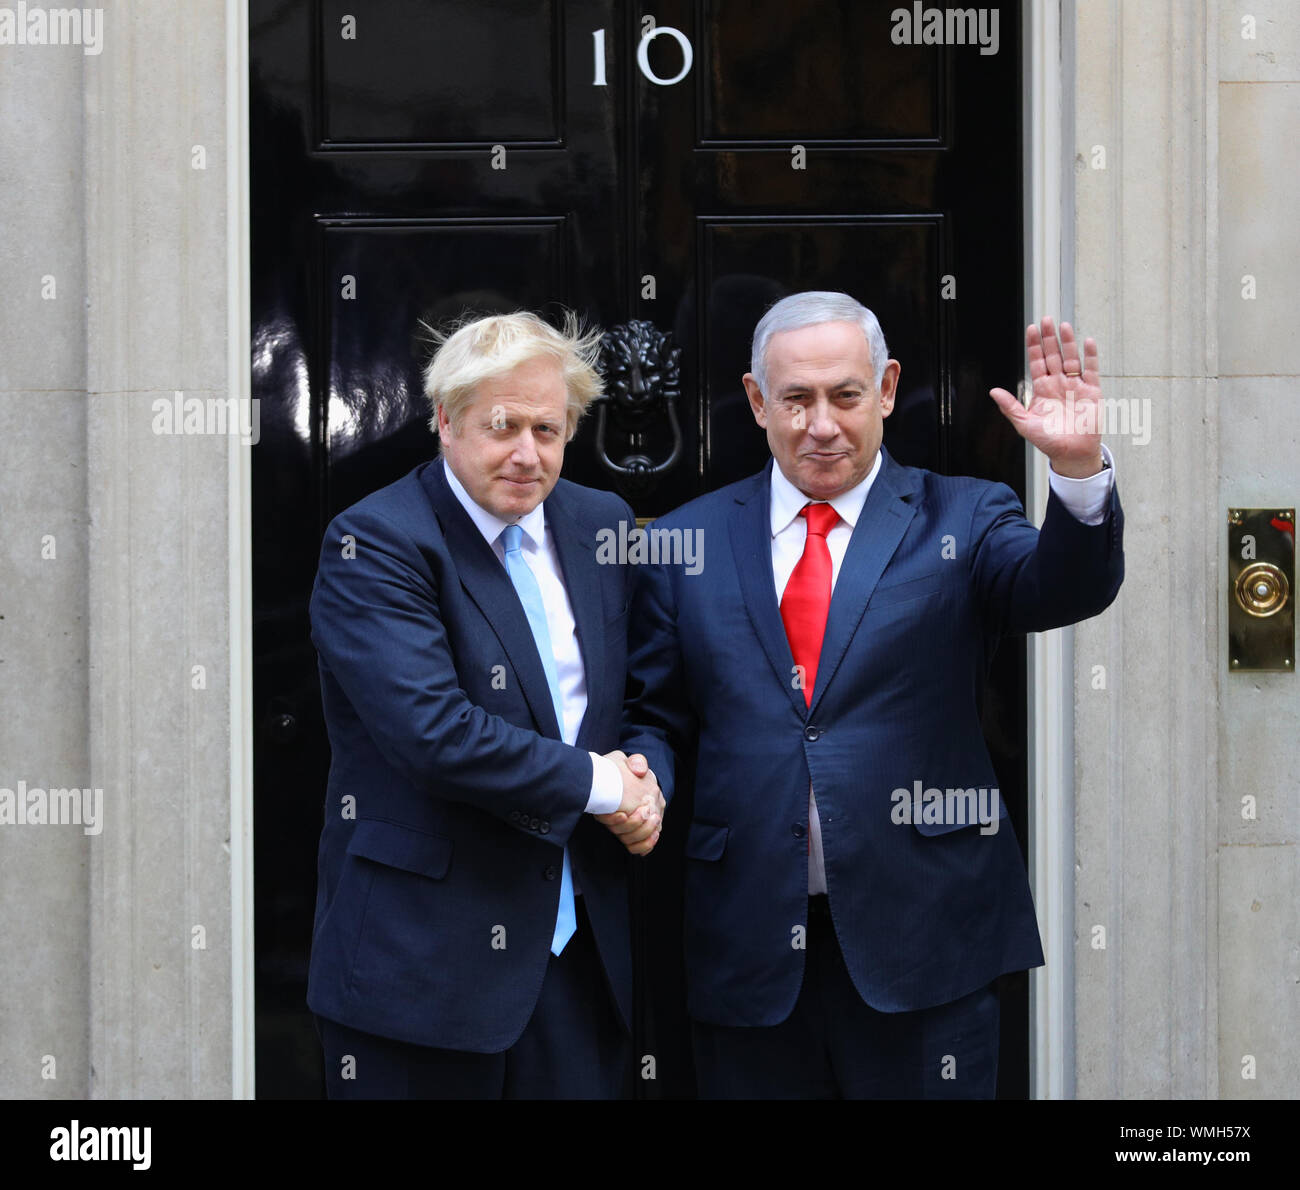 Premier ministre Boris Johnson accueille le Premier ministre israélien Benjamin Netanyahu à l'extérieur de 10 Downing Street, Londres. Banque D'Images